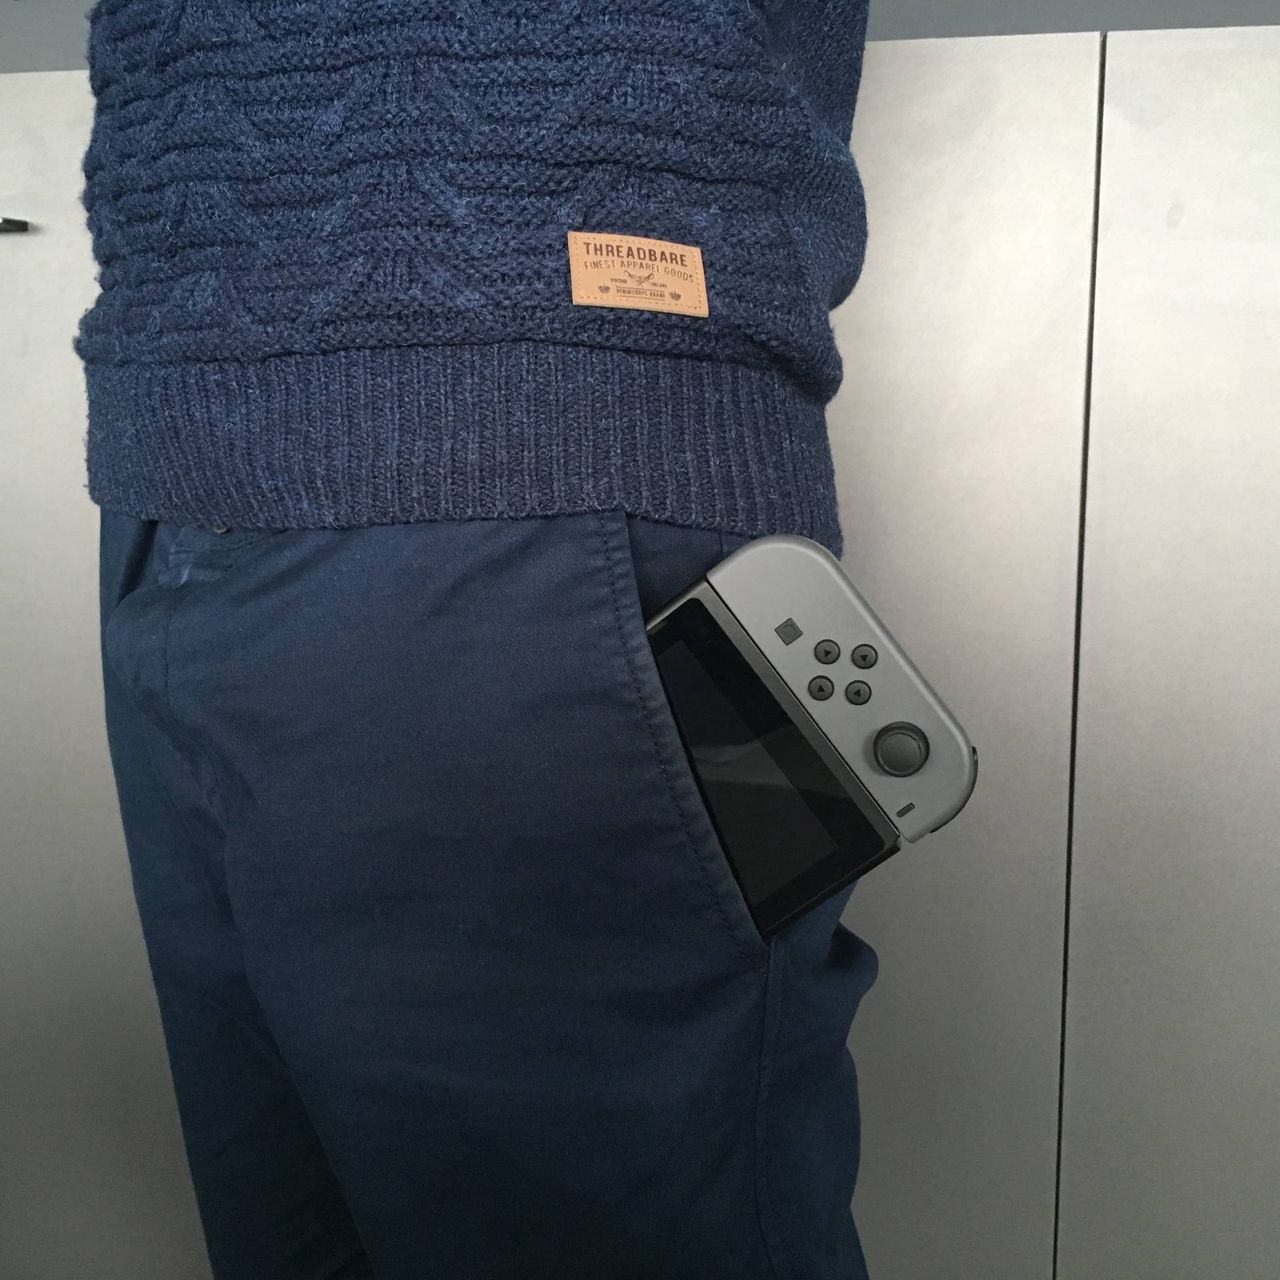 Dziś premiera Nintendo Switch. Zobacz nasz unboxing i galerię zdjęć konsoli